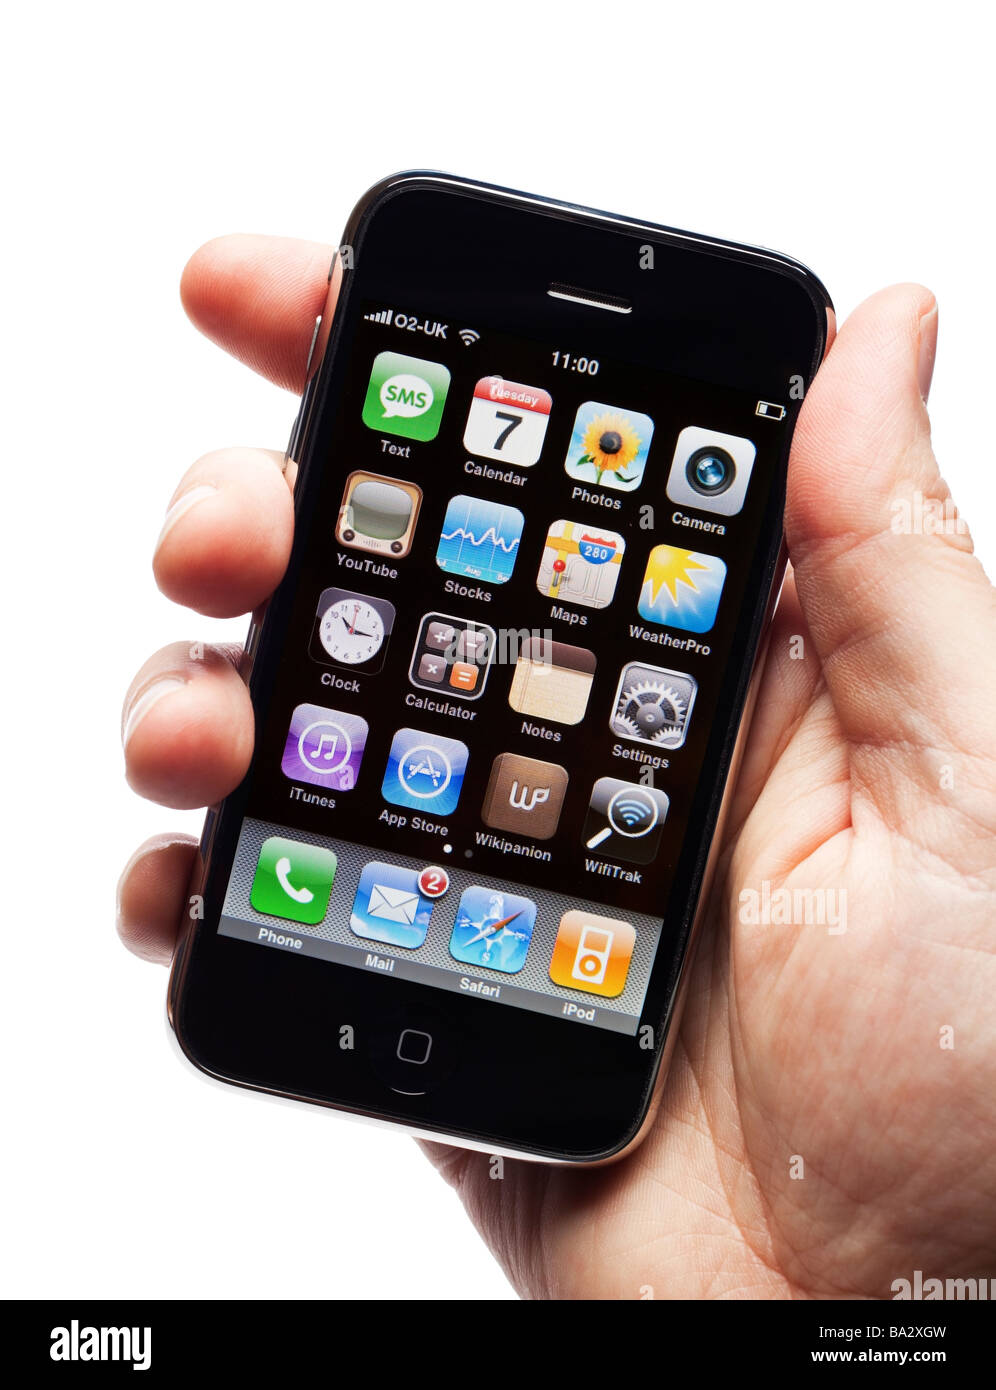 Maschio lato tiene iPhone cellulare smartphone smart phone che mostra la schermata delle applicazioni Foto Stock